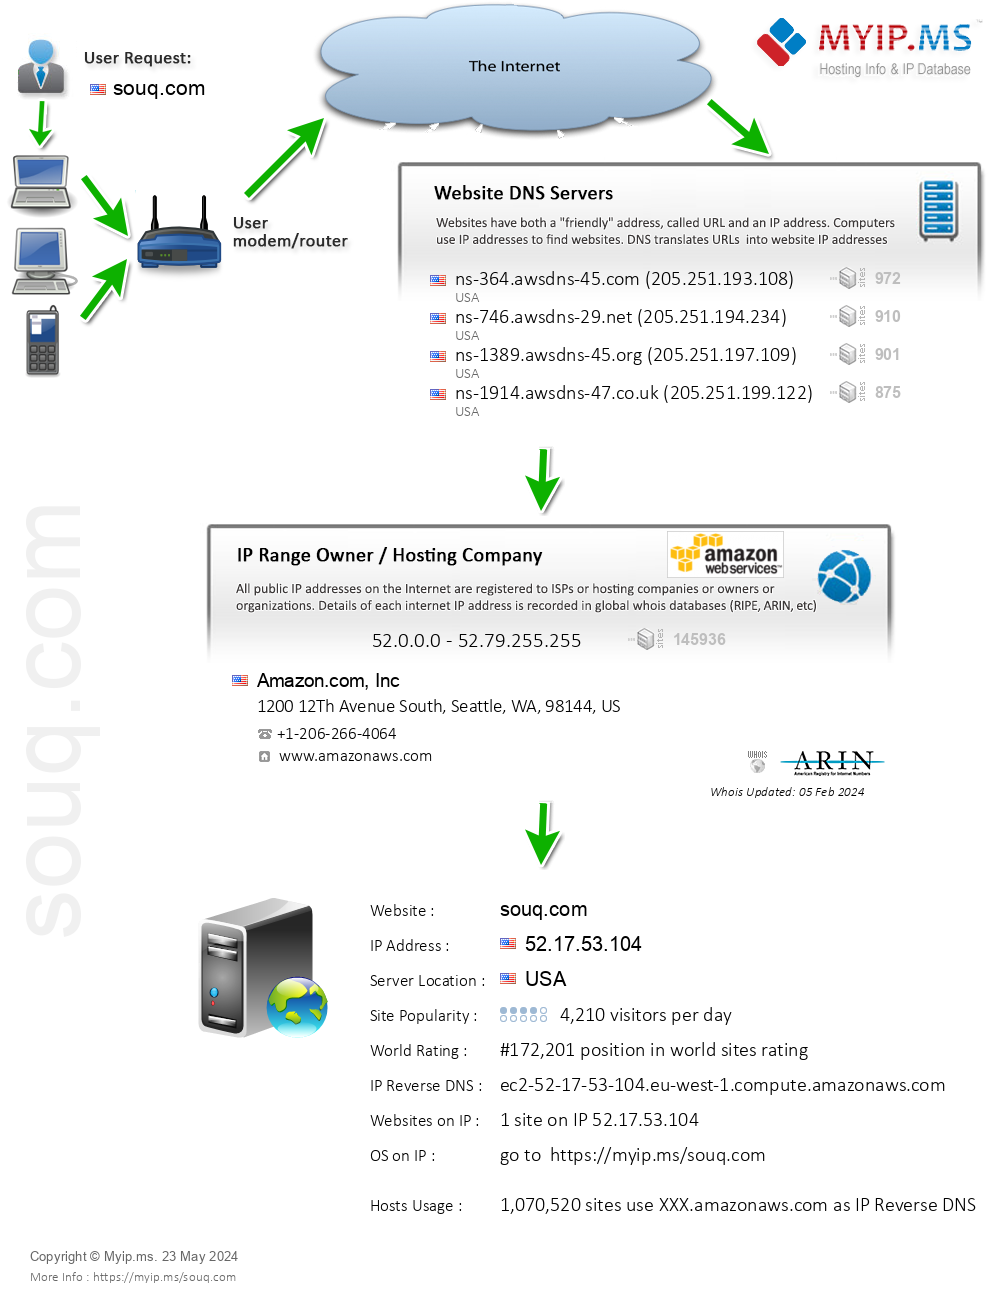 Souq.com - Website Hosting Visual IP Diagram